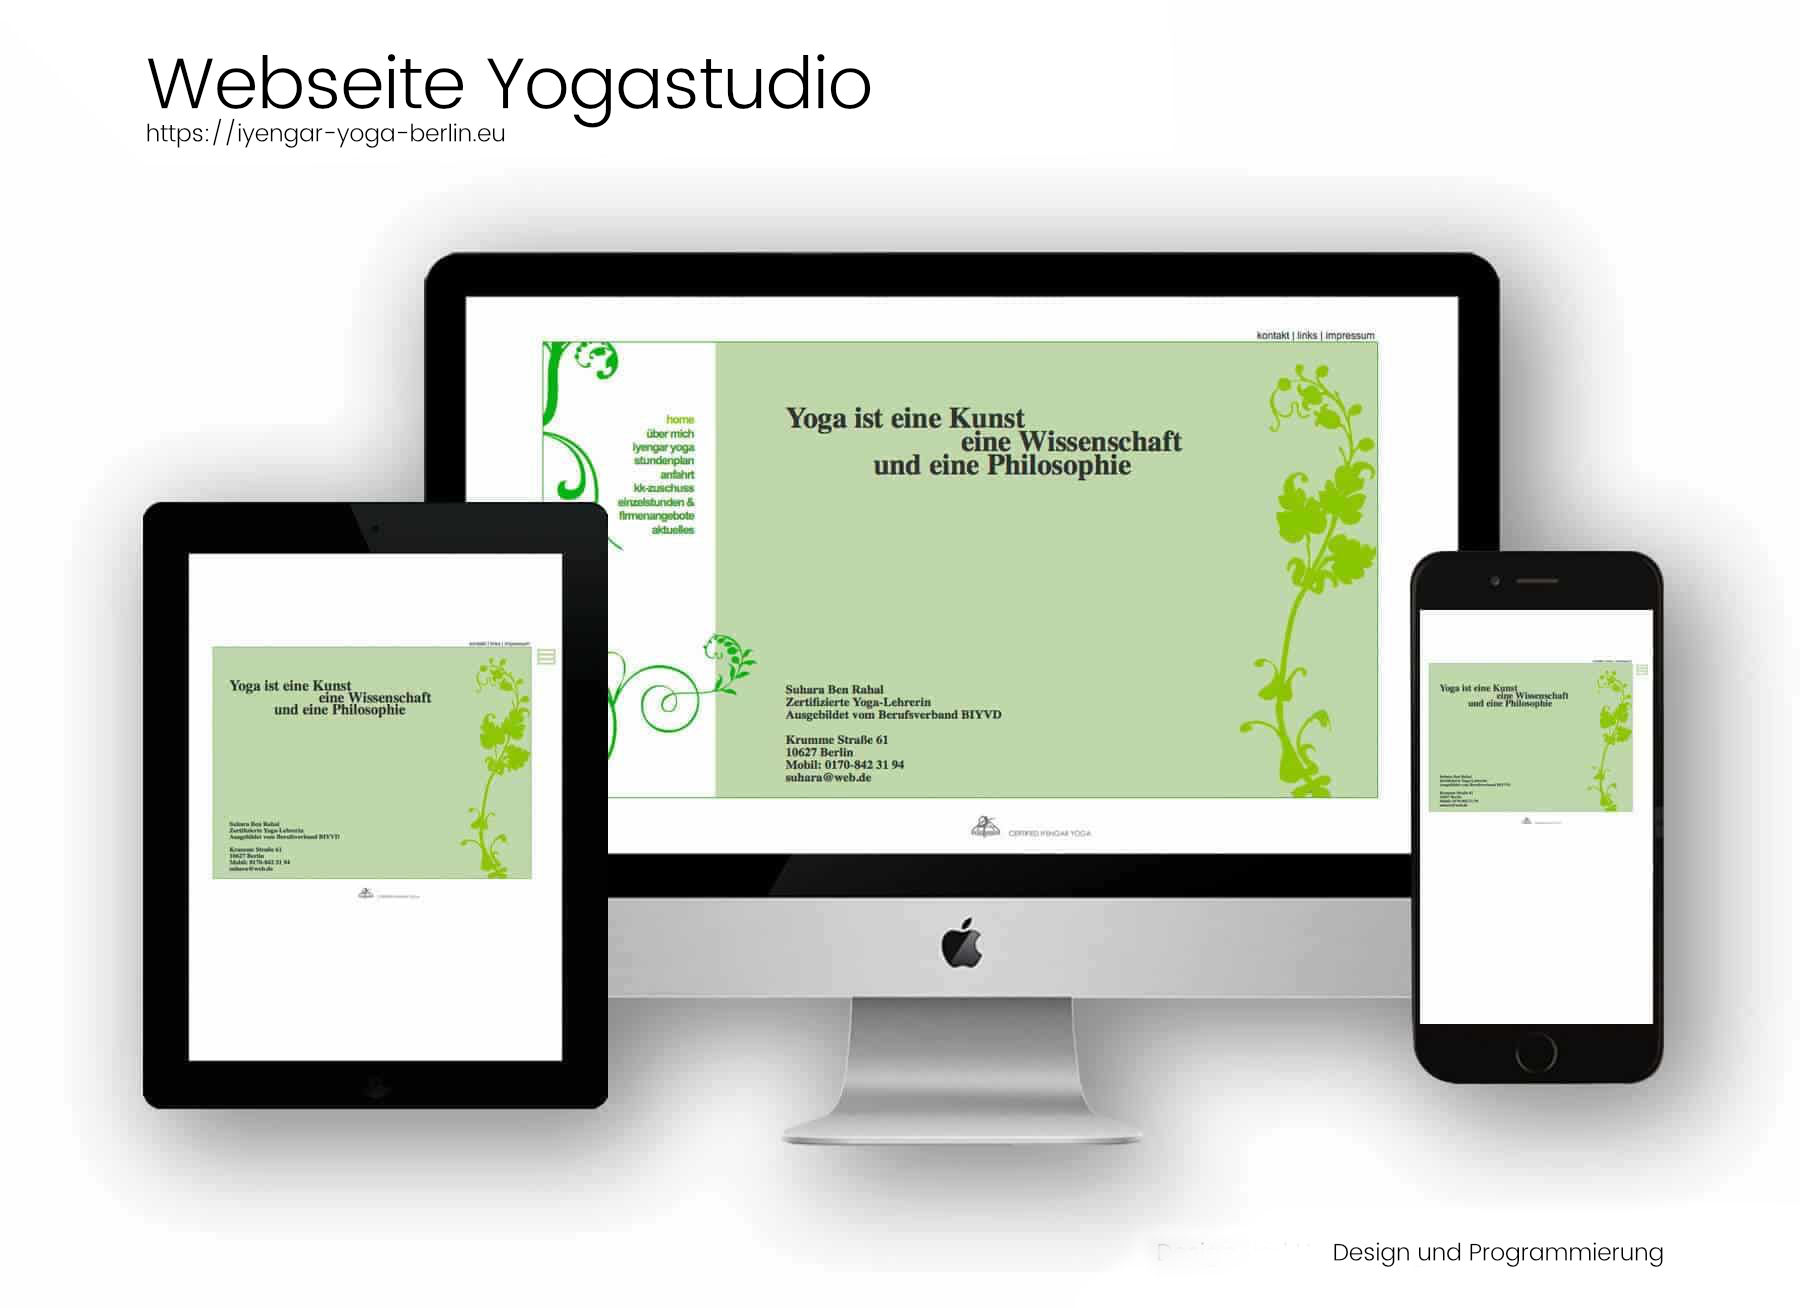 Referenzen Webdesign und Programmierung- Inyengar-Yoga-Studio Suhara Ben Rahal